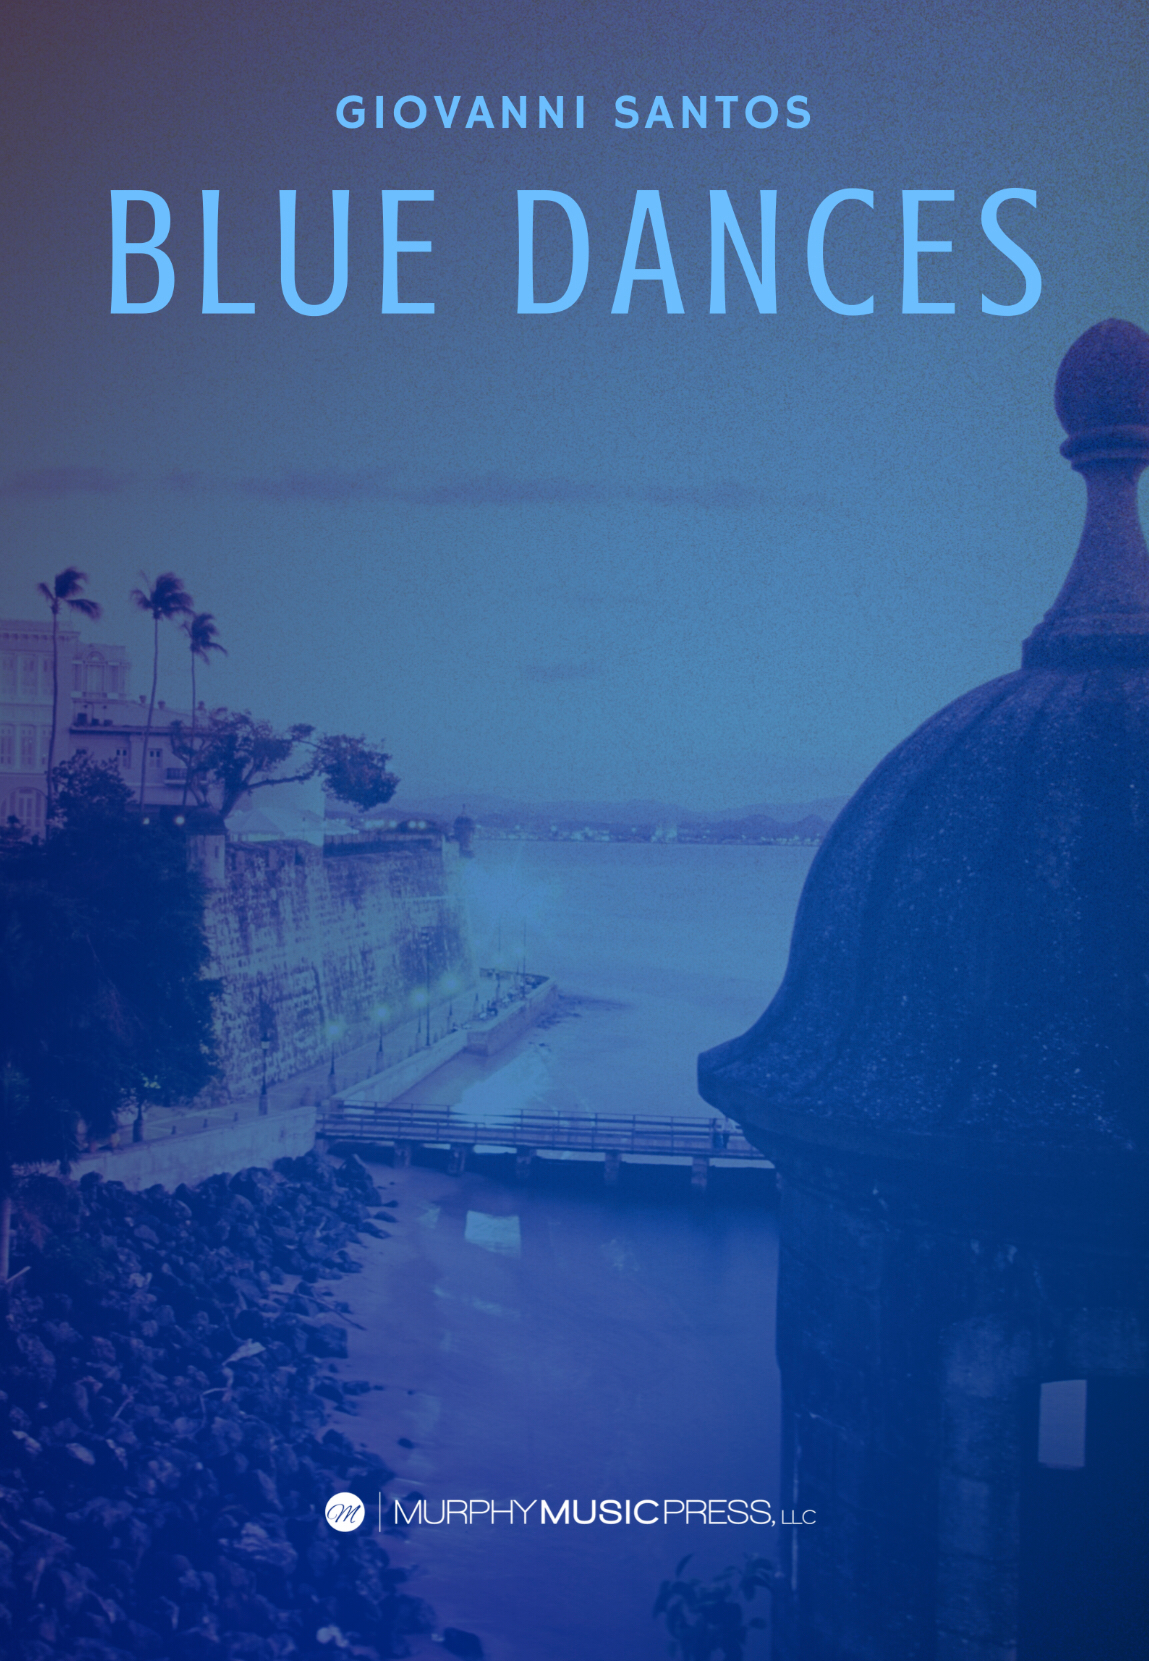 Blue Dances by Giovanni Santos